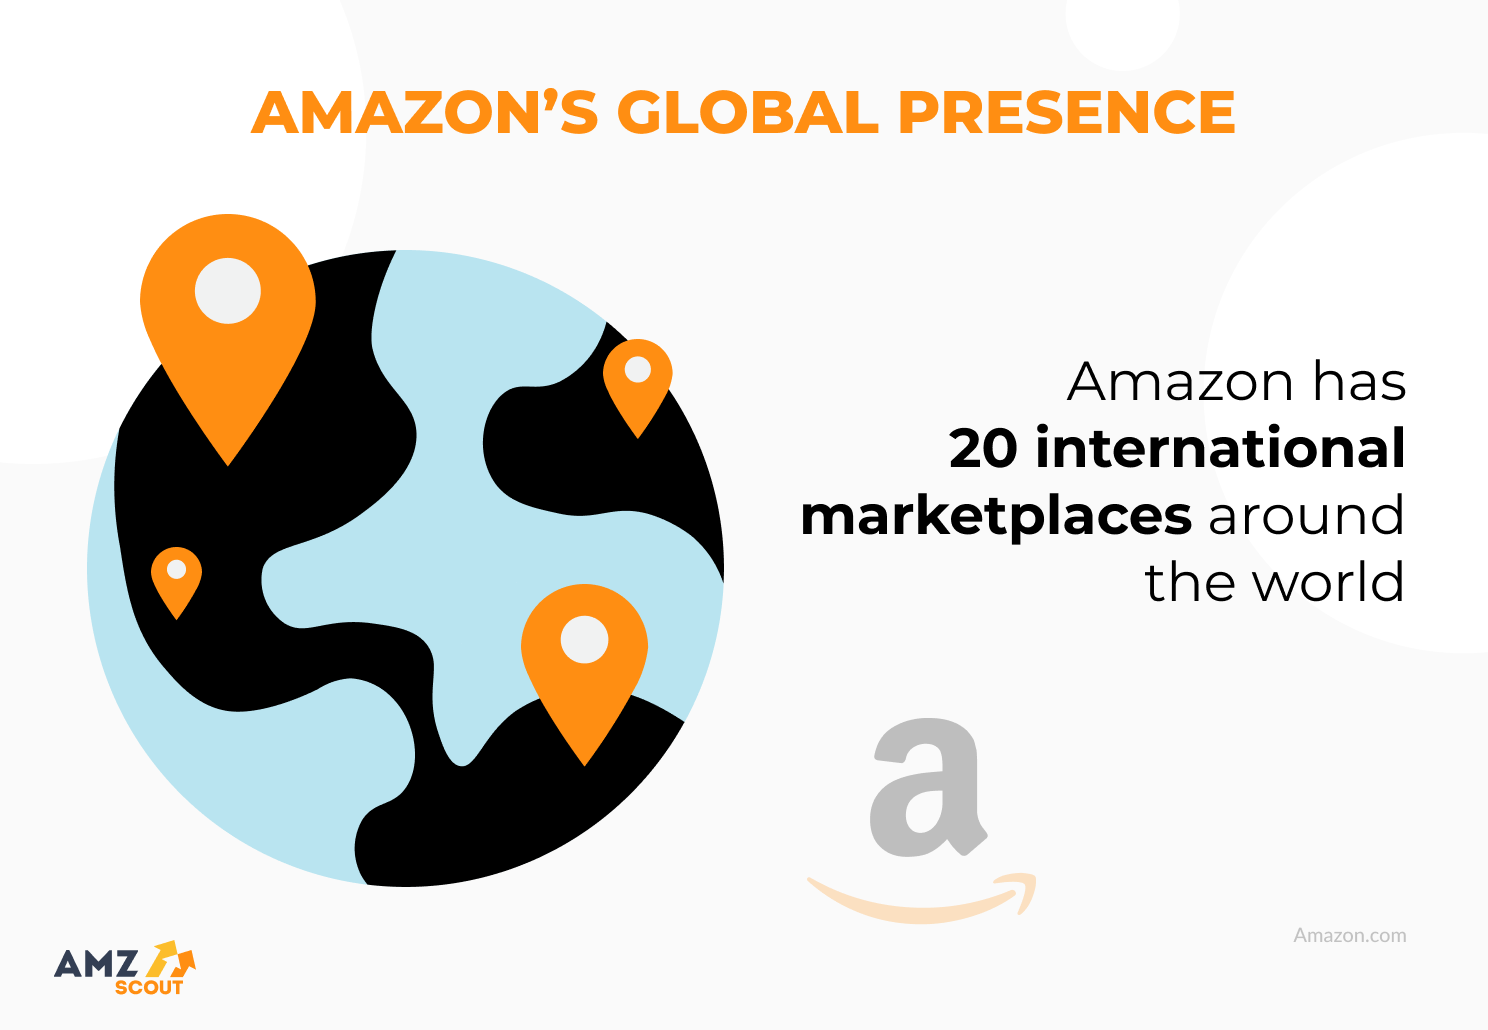 Amazon's global presence 